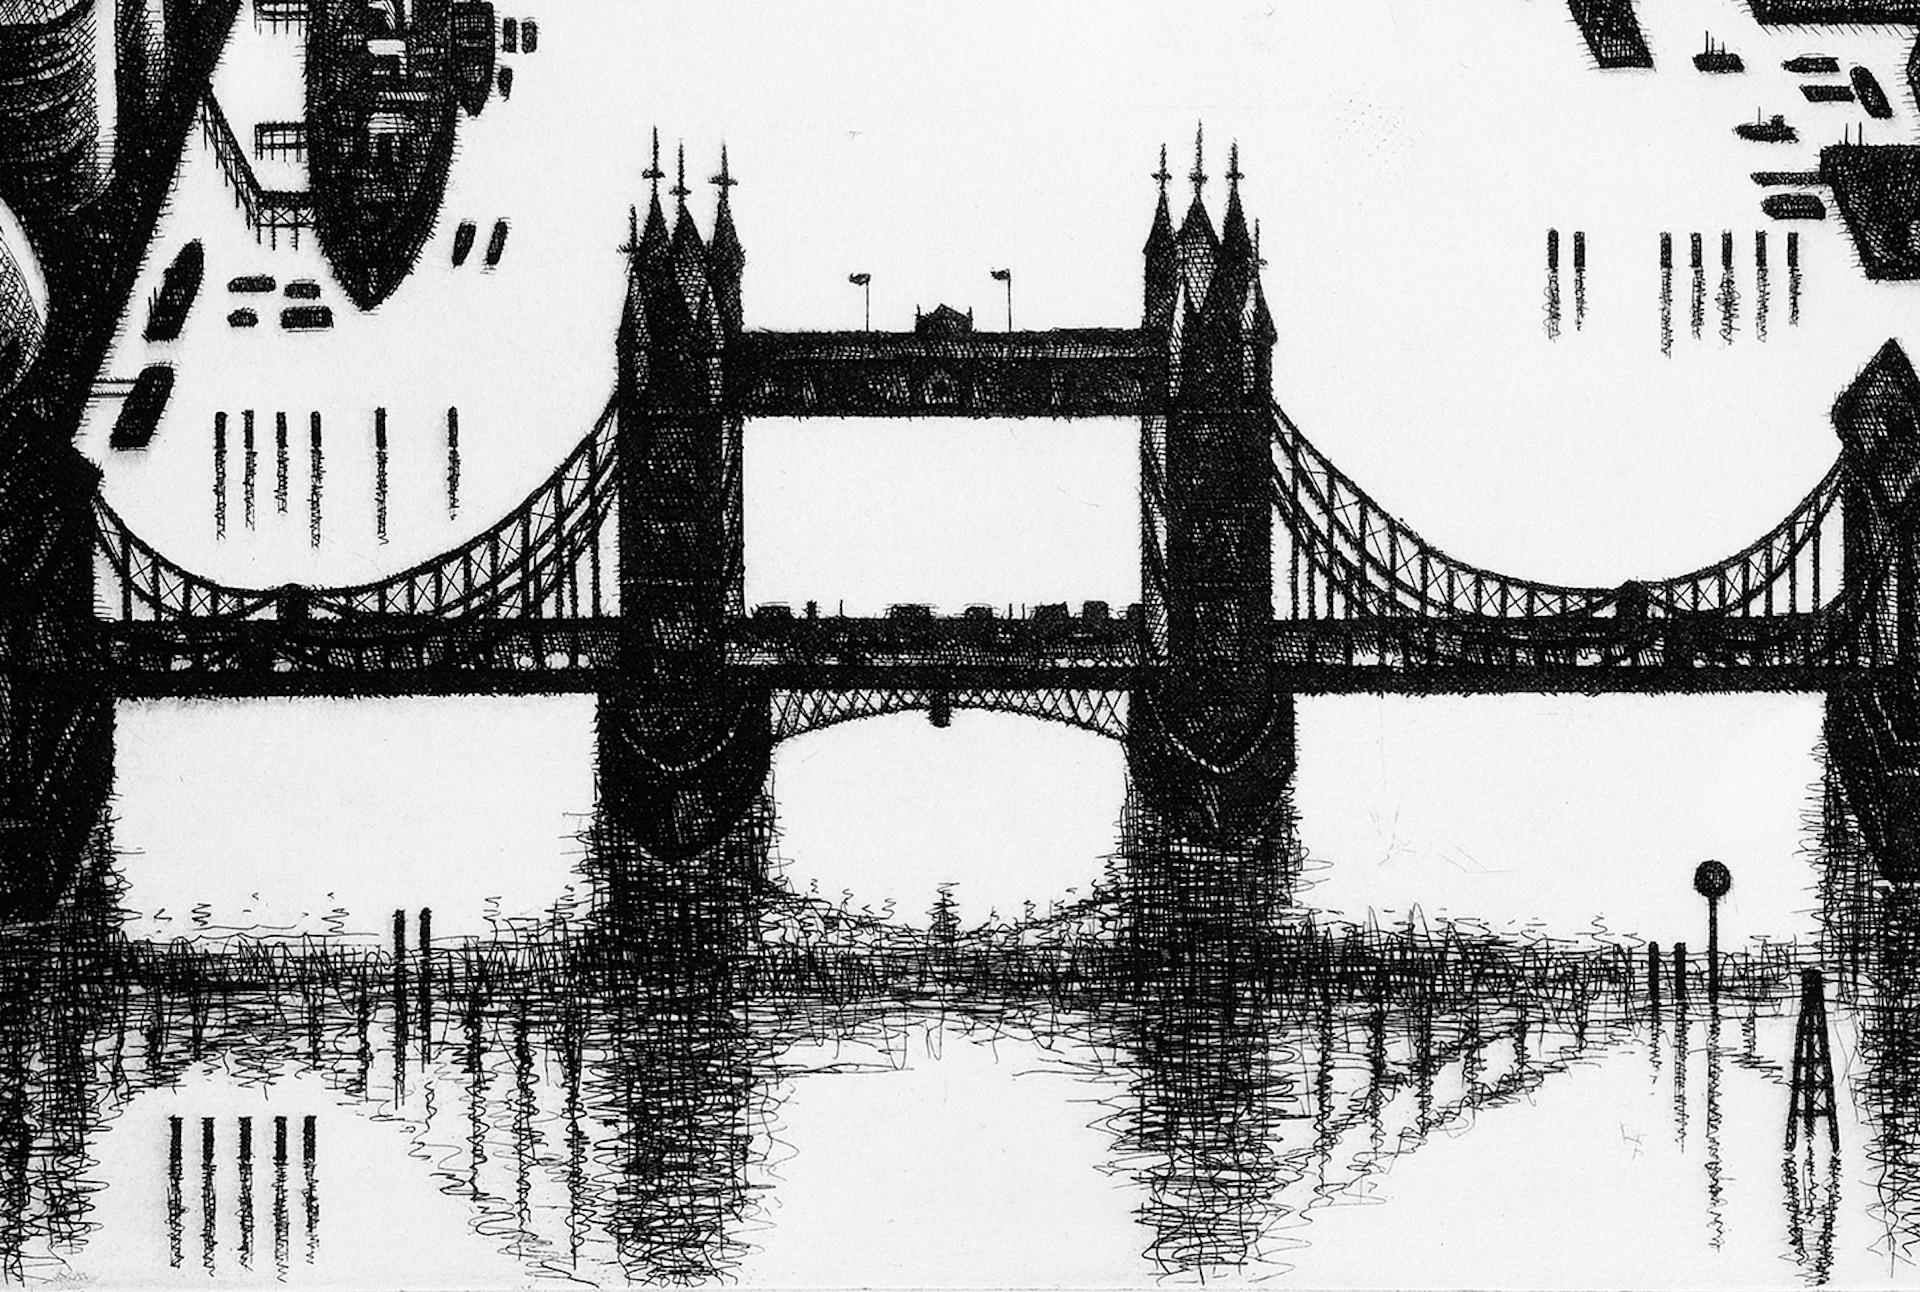 Thames Bridges Dusk ist ein Stadtbilddruck von John Duffin in limitierter Auflage. Das monochromatische Farbschema unterstreicht Duffins detailreichen Stil.
John Duffin ist ein Maler und Grafiker, der sich in seinen Arbeiten mit dem modernen Umfeld